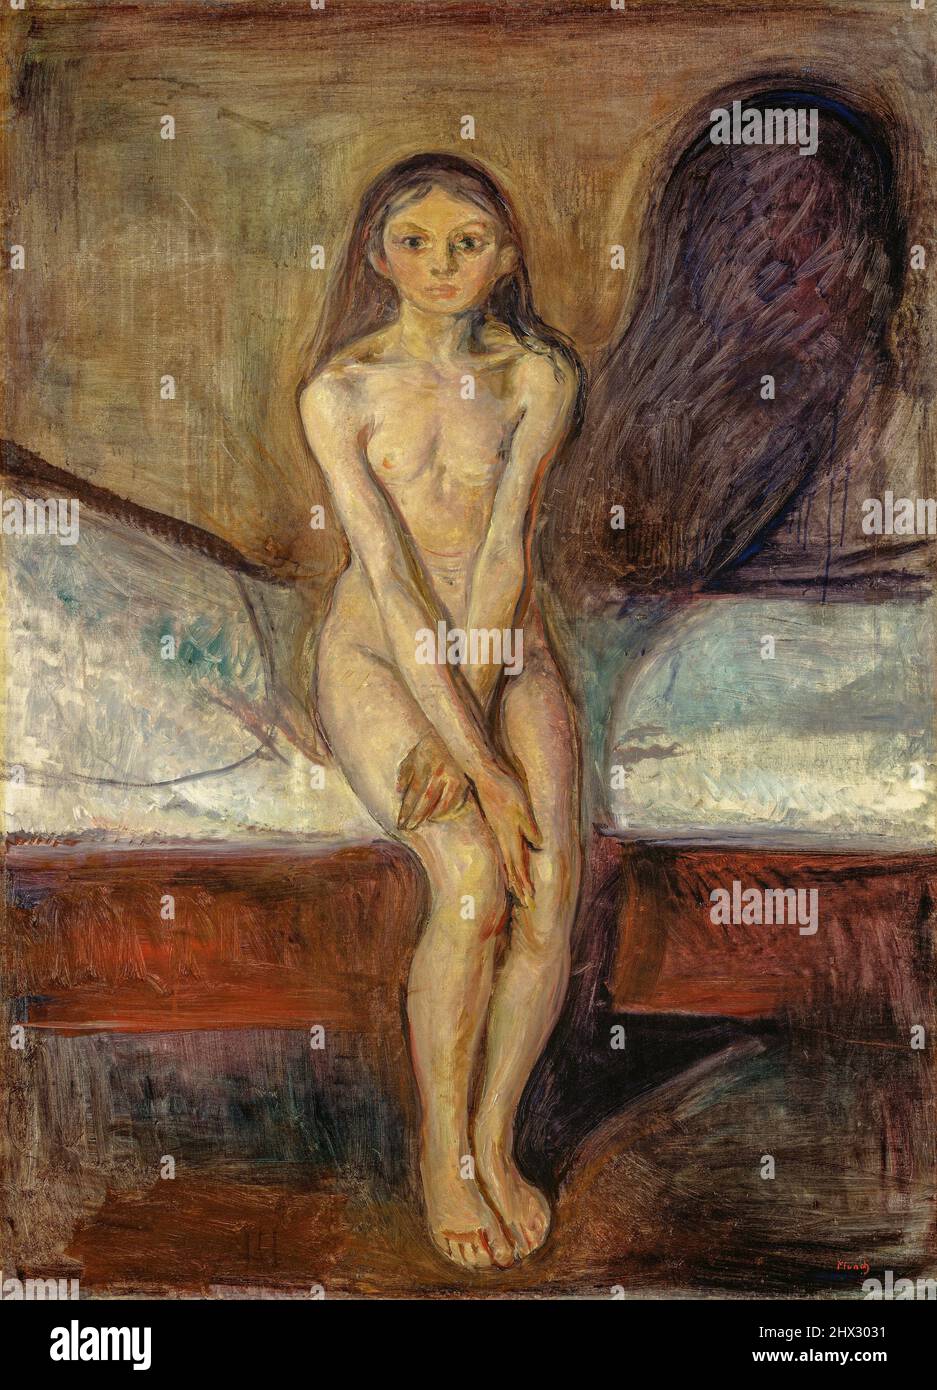 Edvard Munch, puberty est une peinture à l'huile sur toile entre 1894-95 par le peintre norvégien Edvard Munch (1863-1944). Banque D'Images